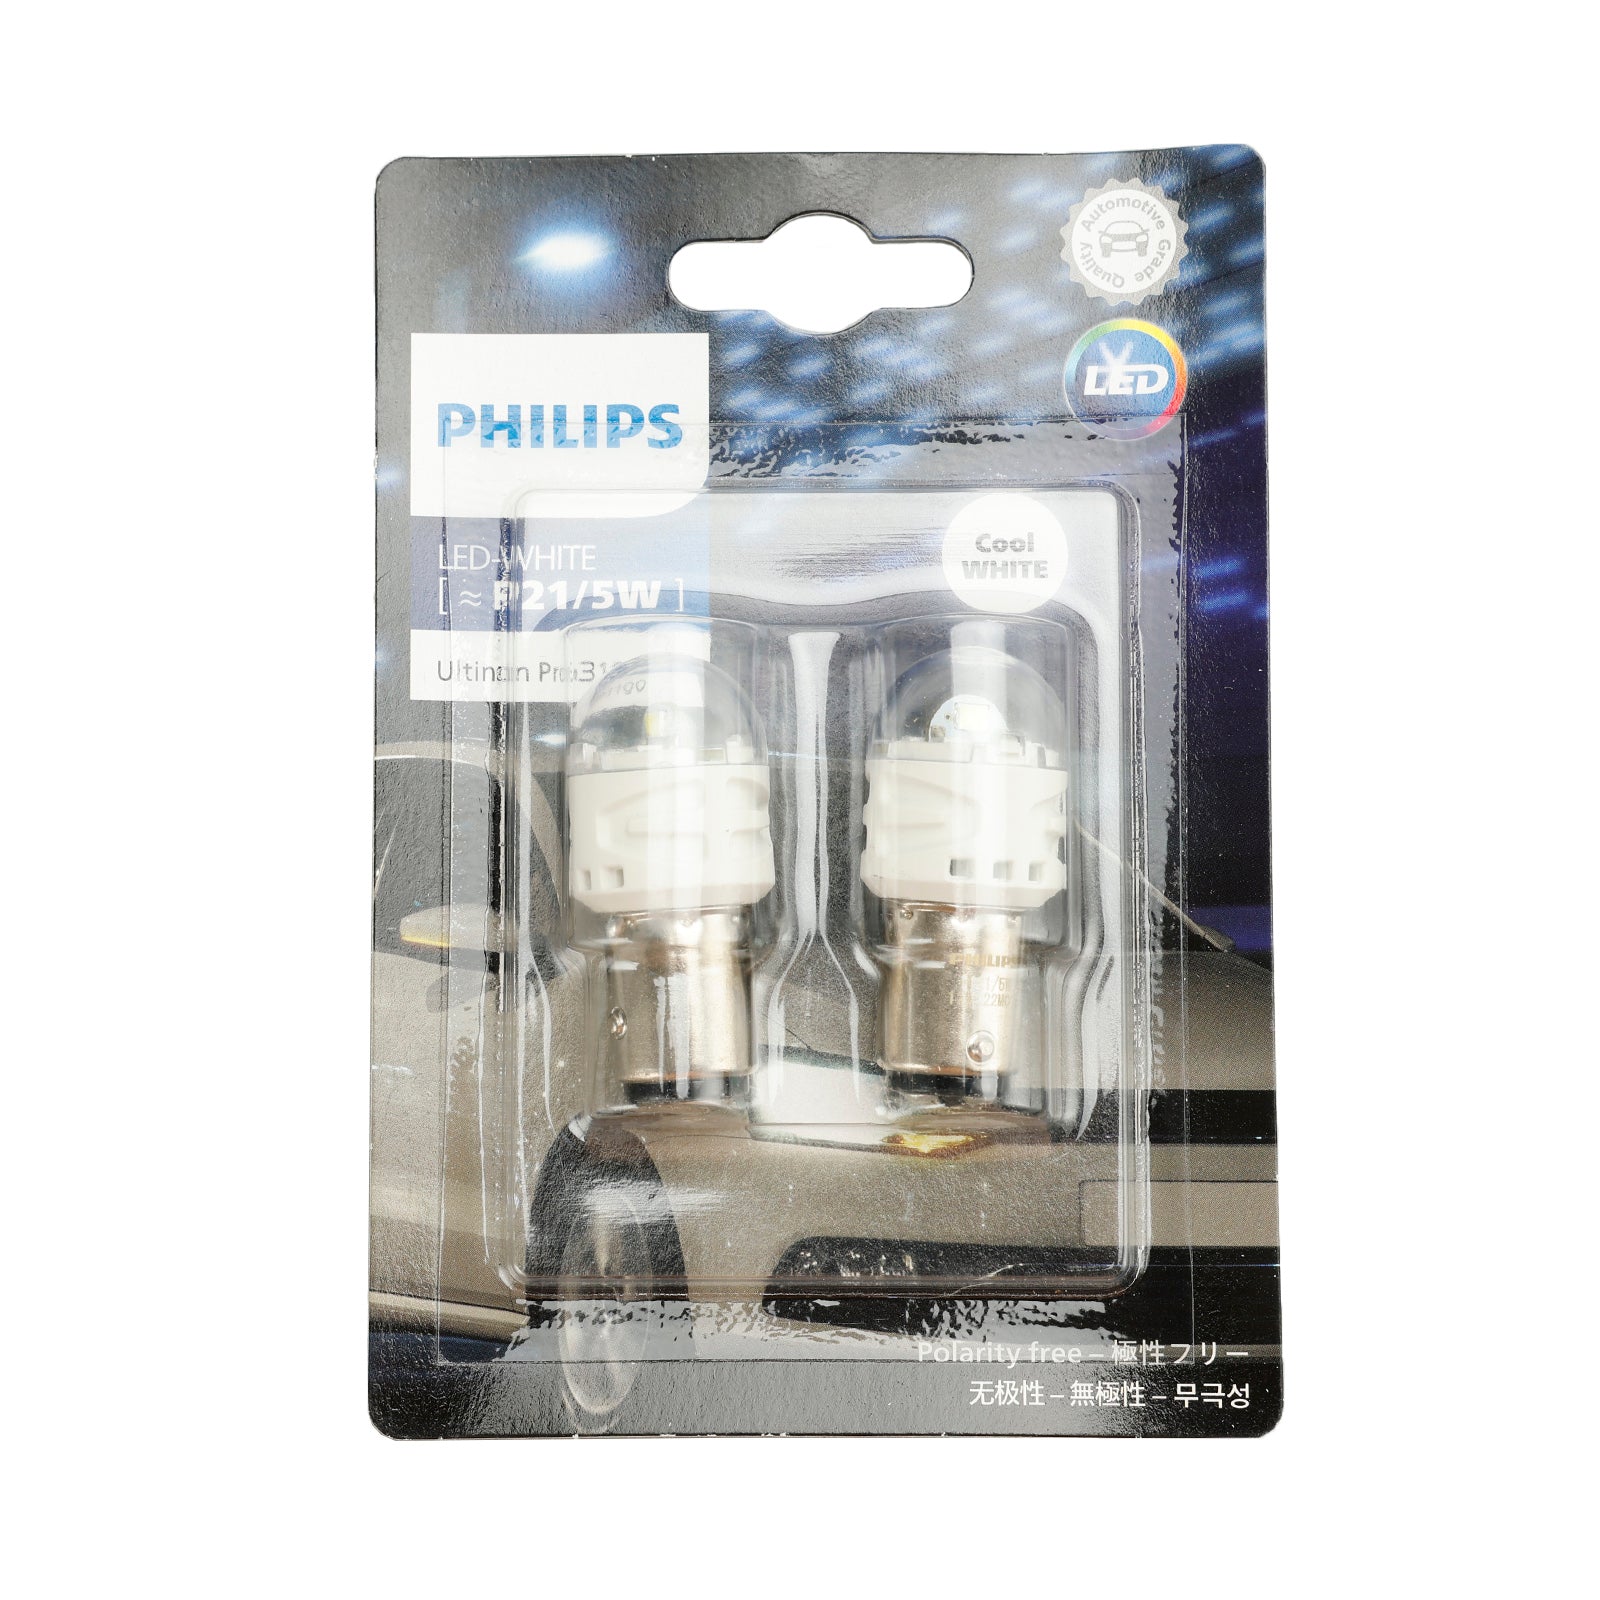 Pour Philips 11499CU31B2 Ultinon Pro3100 LED-BLANC P21/5W 6000K BAY15d